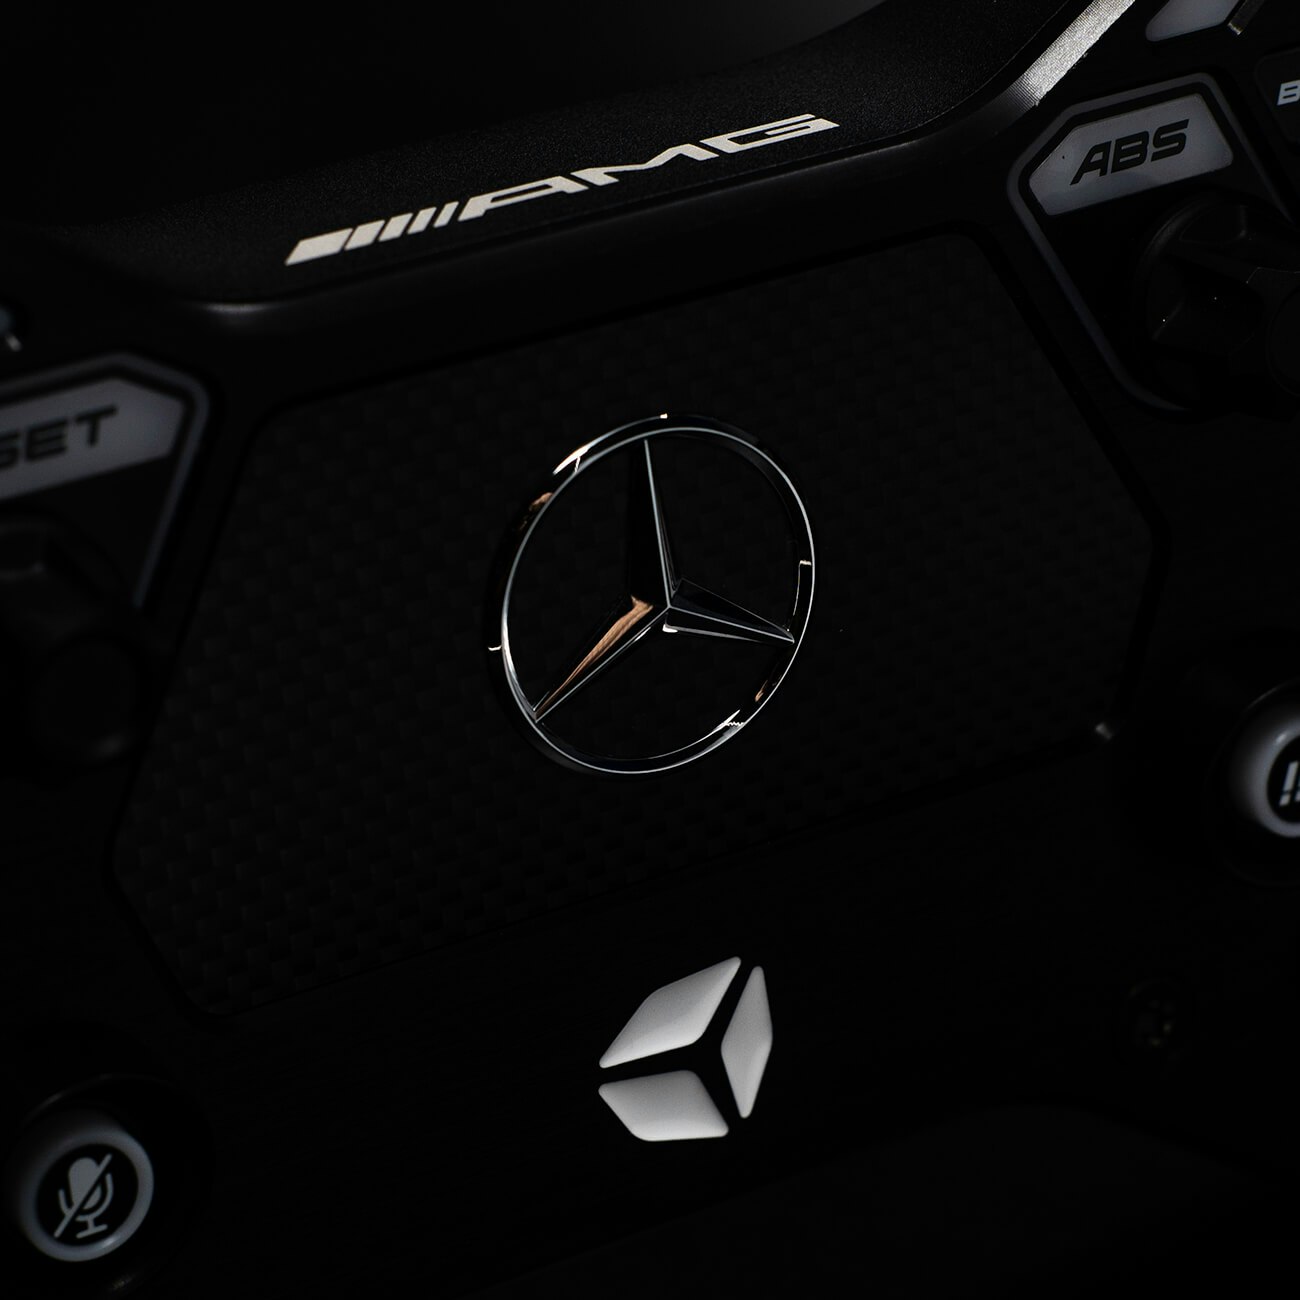 Cube Controls Mercedes-AMG-GT Edition Simracing Ratt